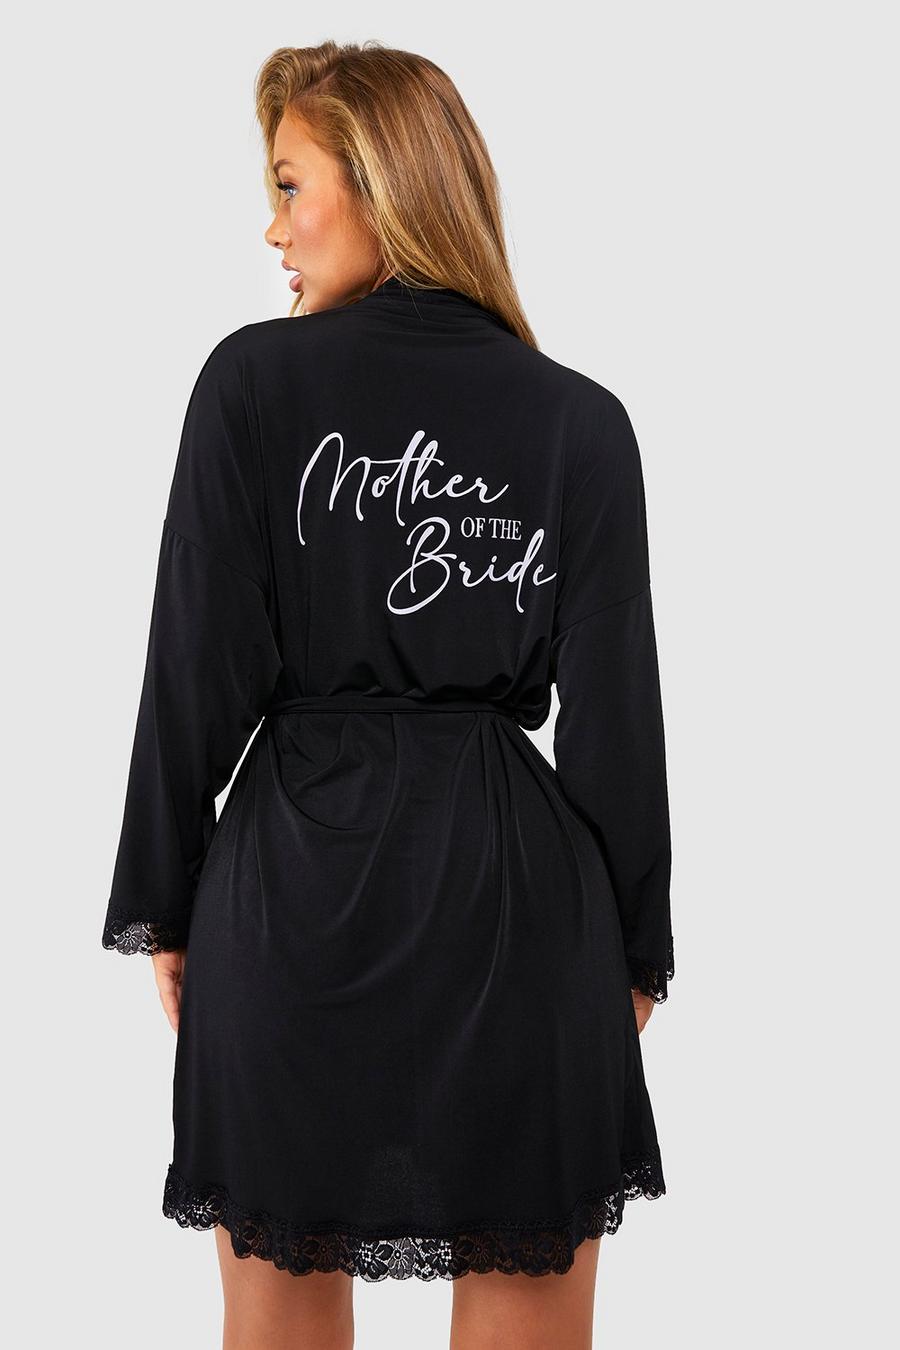 Vestaglia in jersey con scritta Mother Of The Bride e finiture in pizzo, Black negro